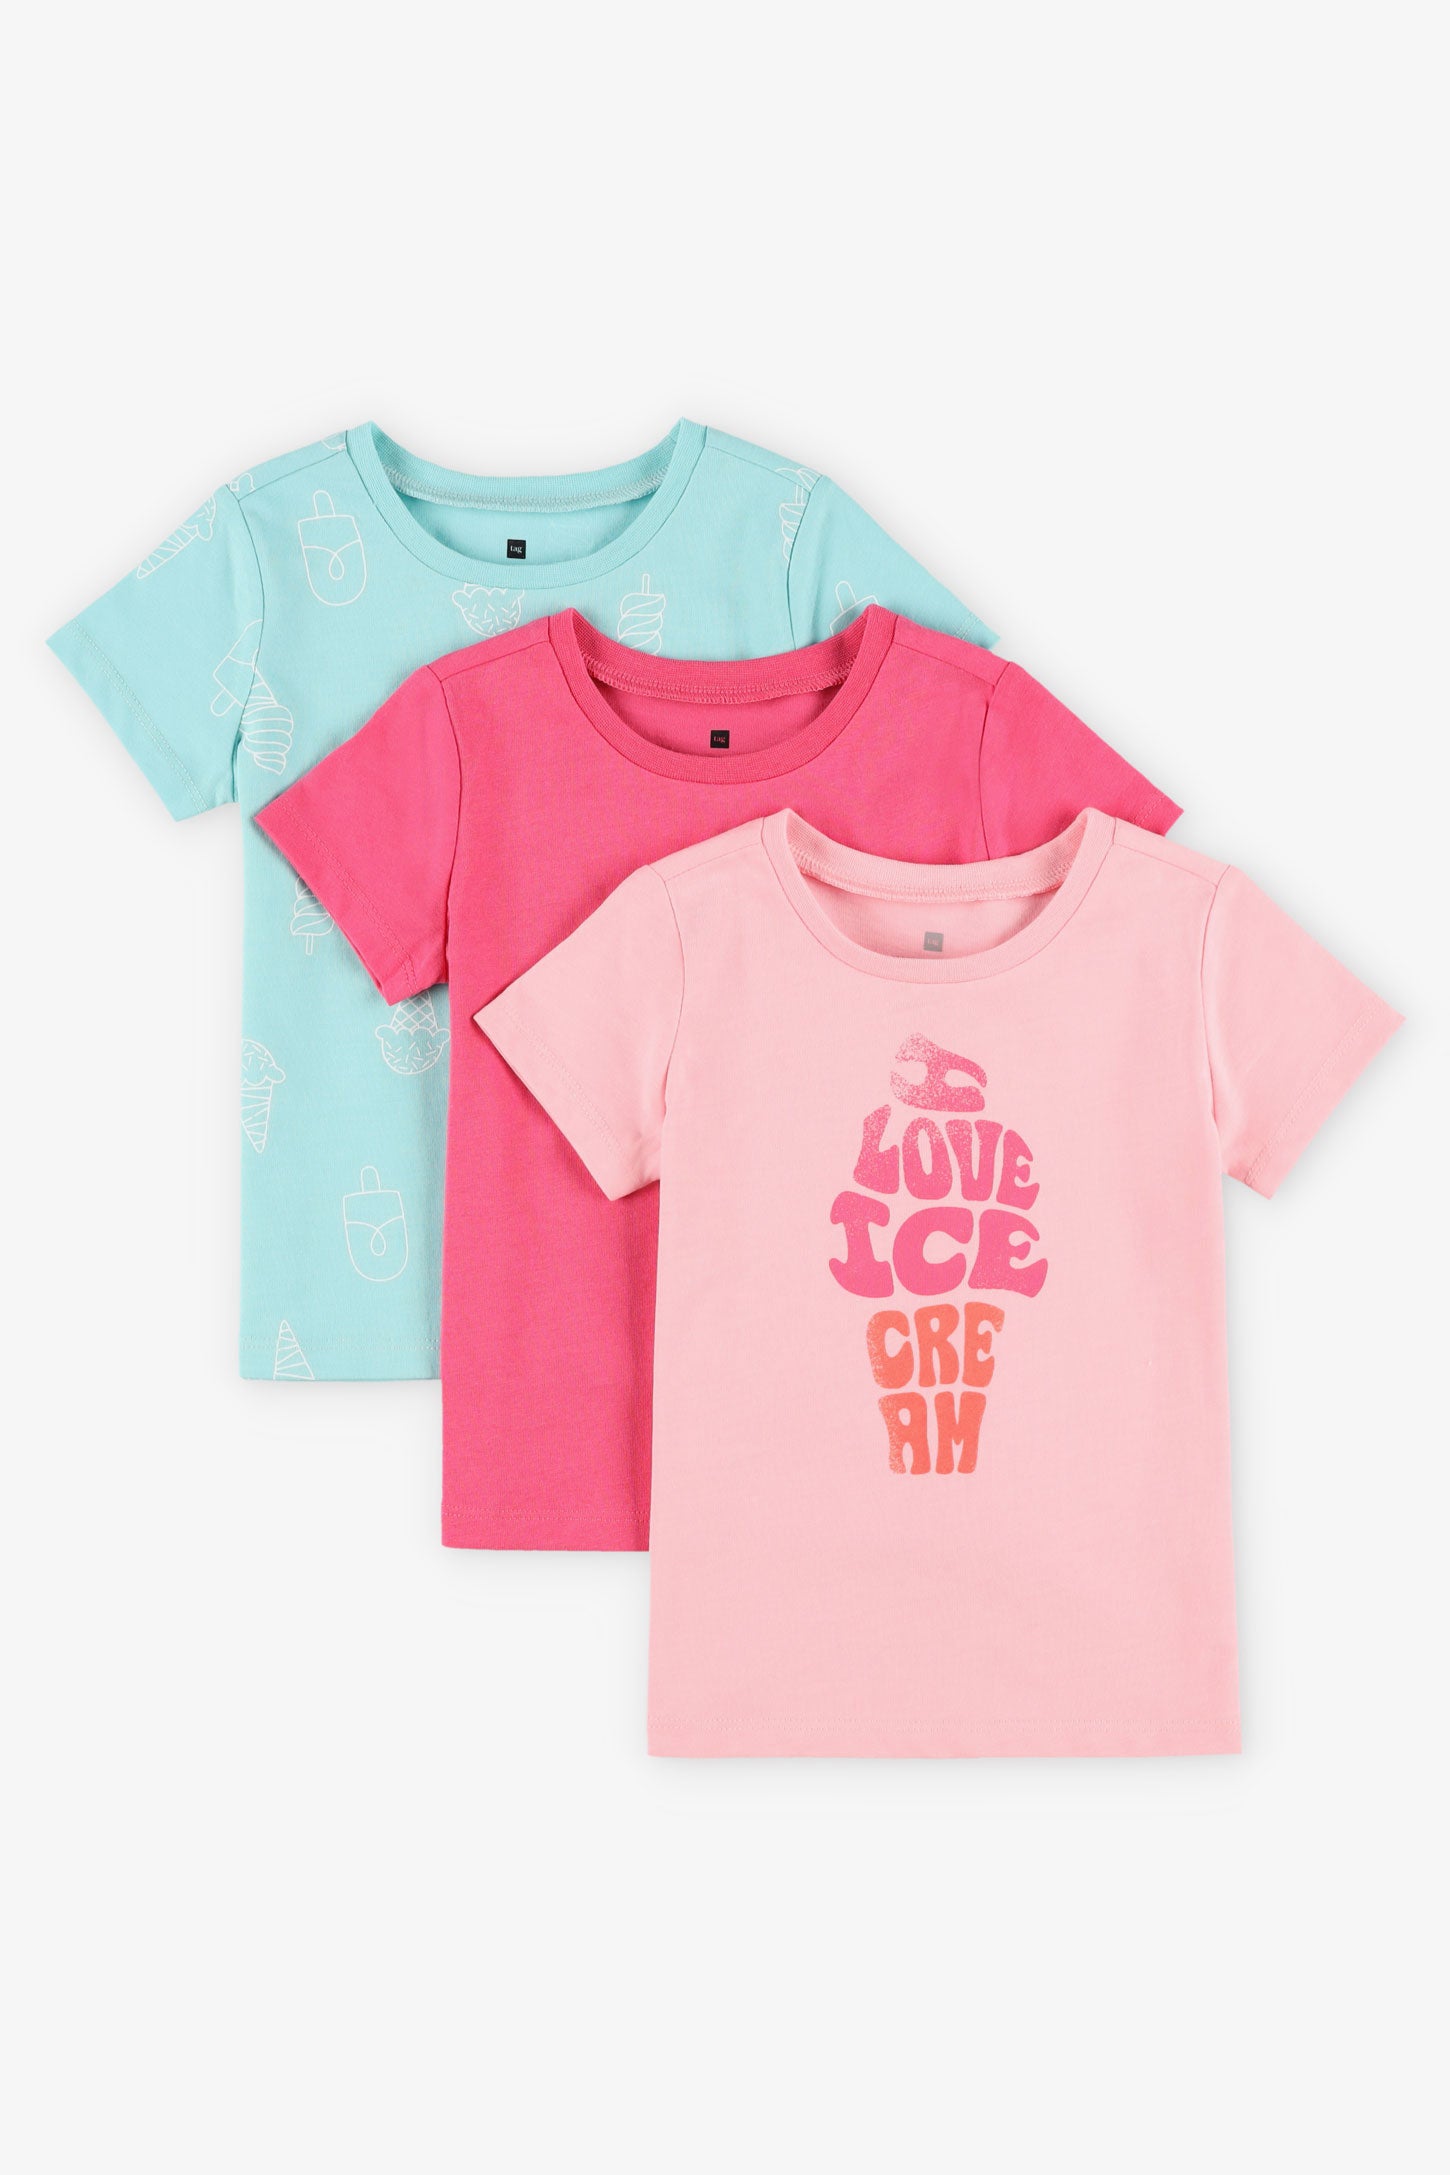 Prix pop, Lot de 3 t-shirts en coton, 2T-3T - Bébé fille && ROSE